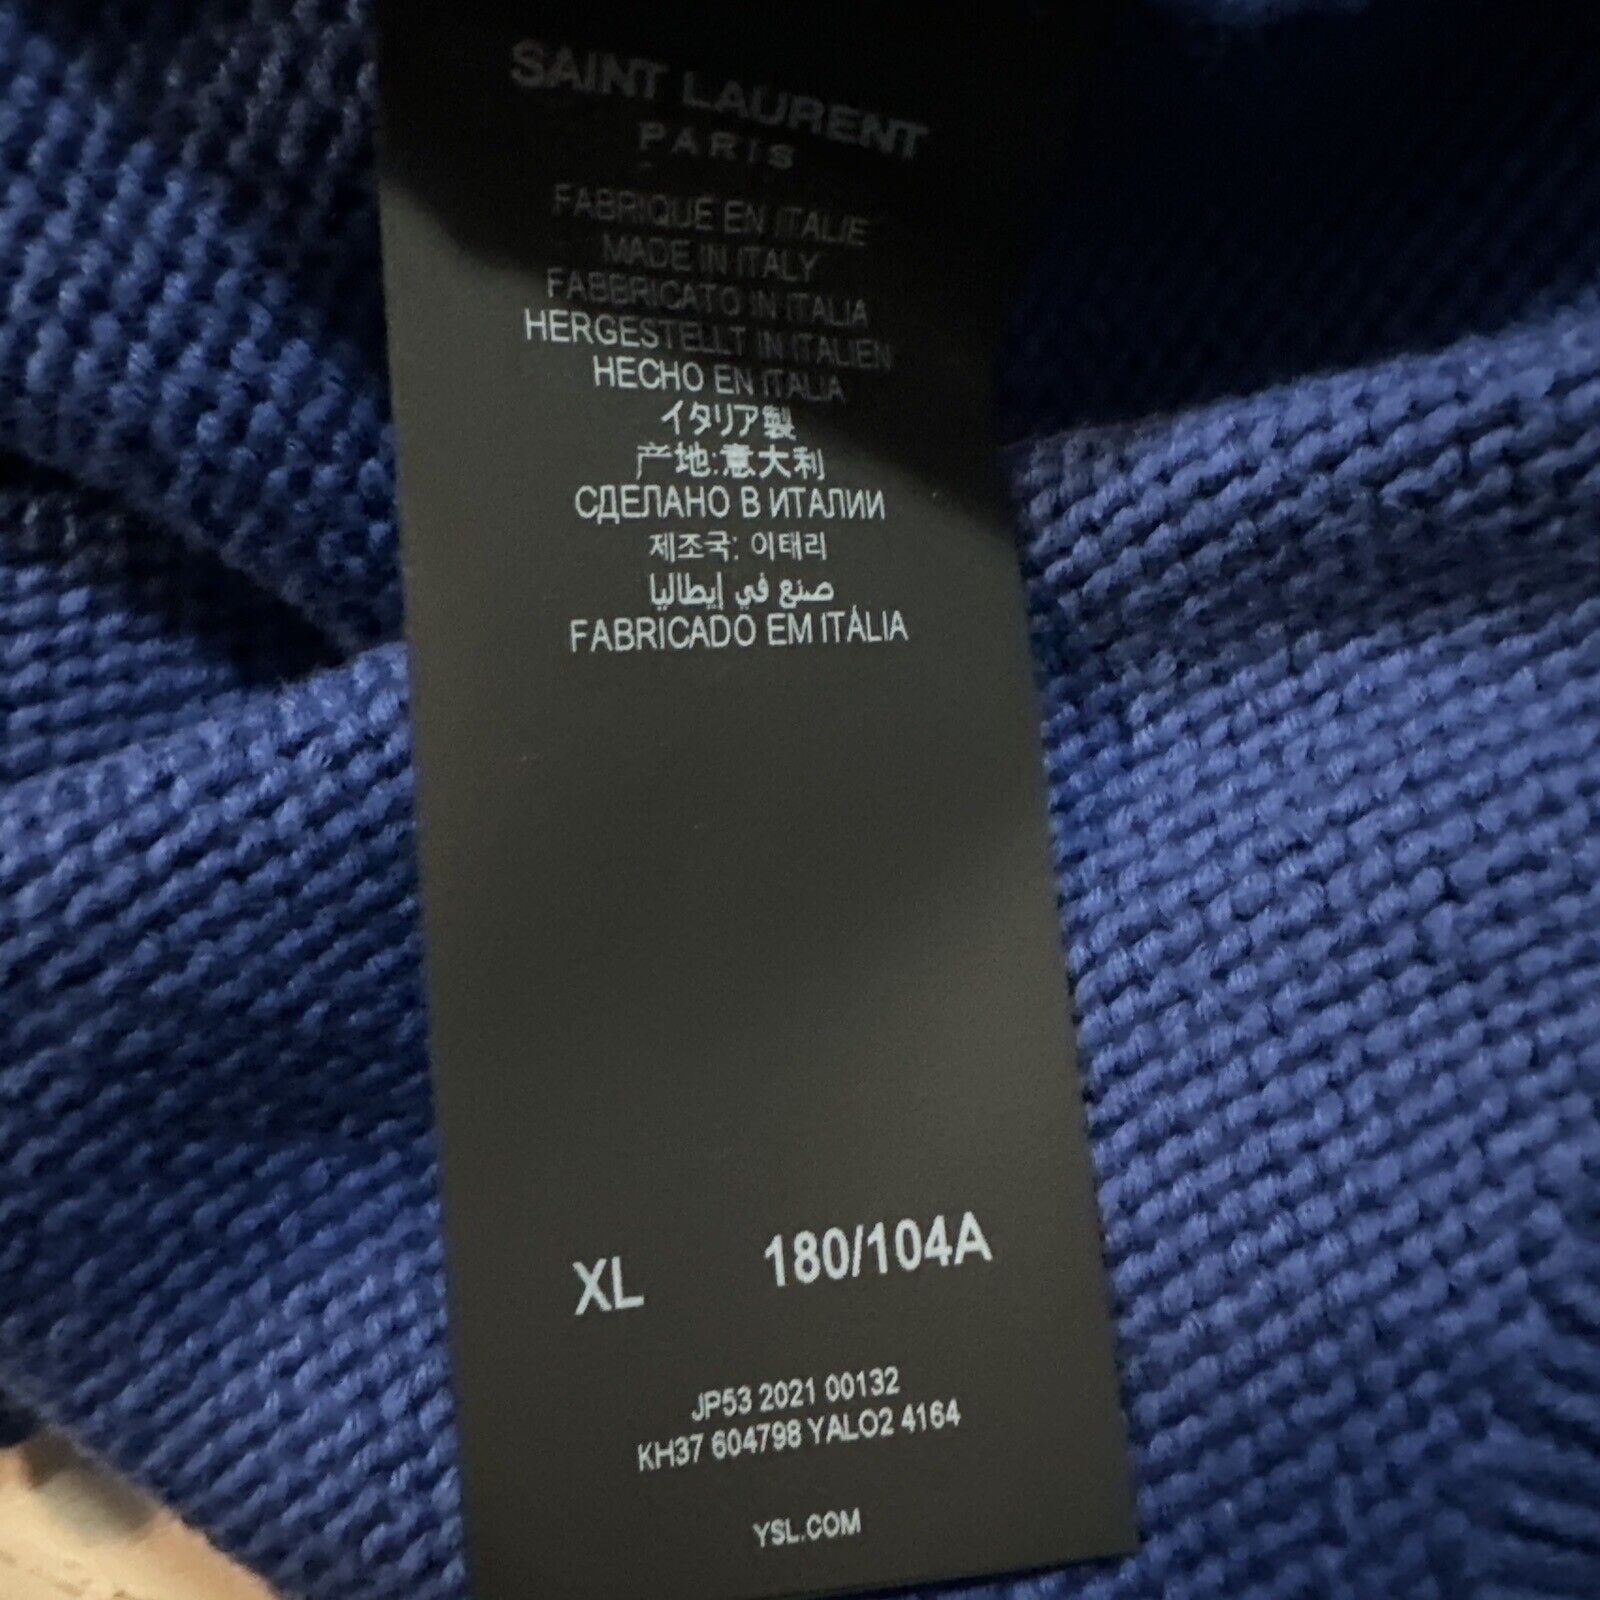 Neu mit Etikett: 890 $ Saint Laurent Herrenpullover mit Rundhalsausschnitt, Blau, Größe XL, Italien